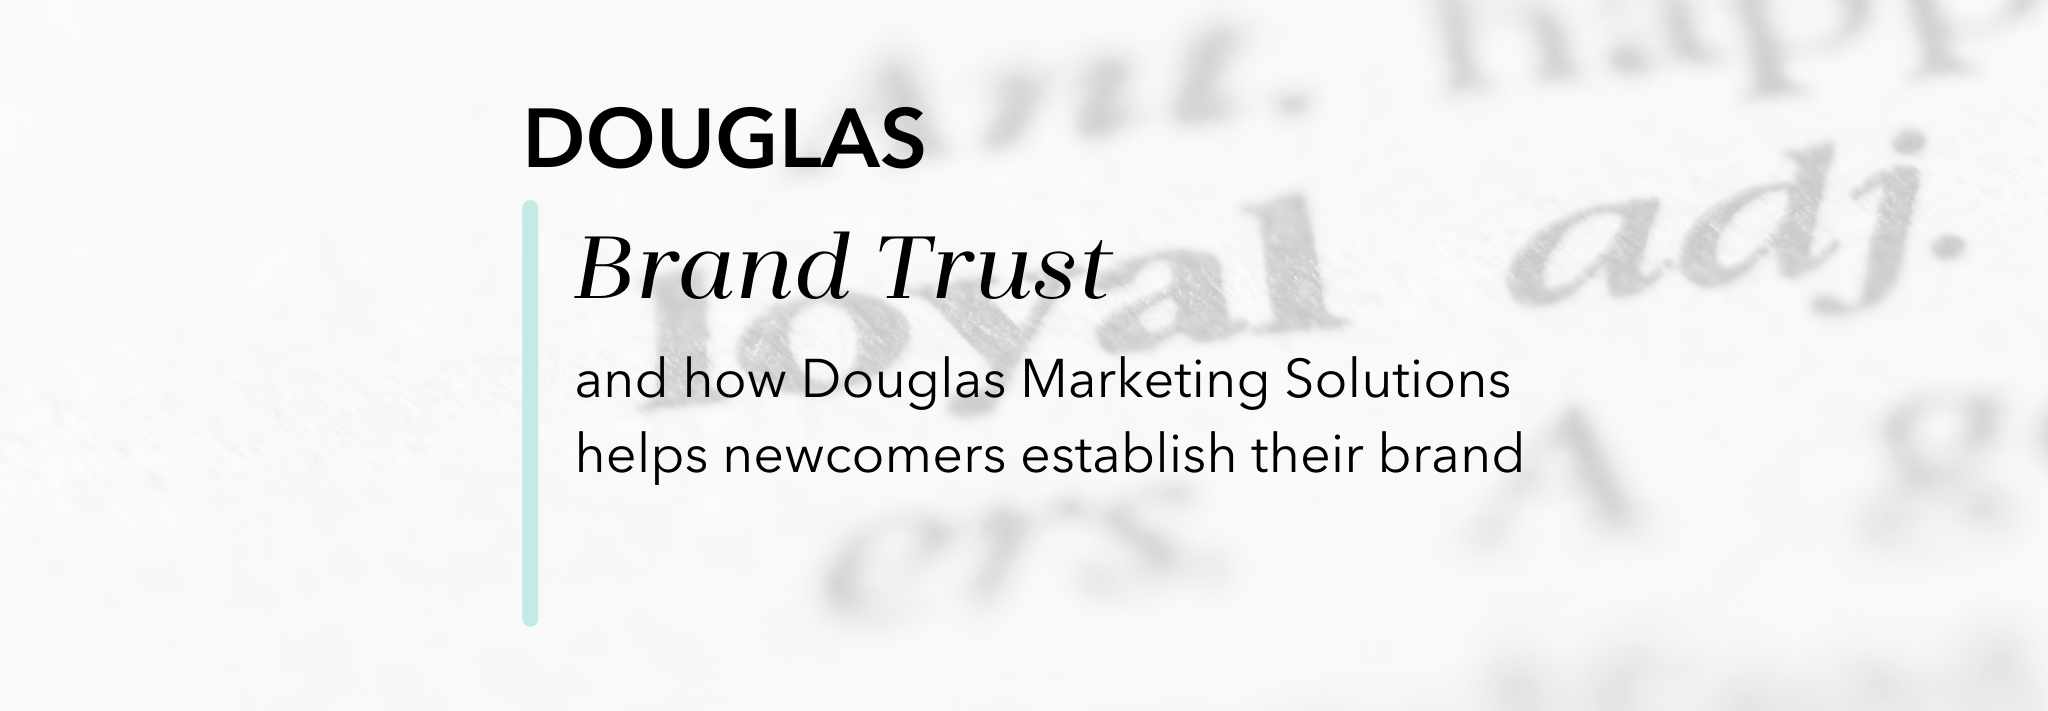 Titelbild mit Schriftzug - Douglas Brand Trust